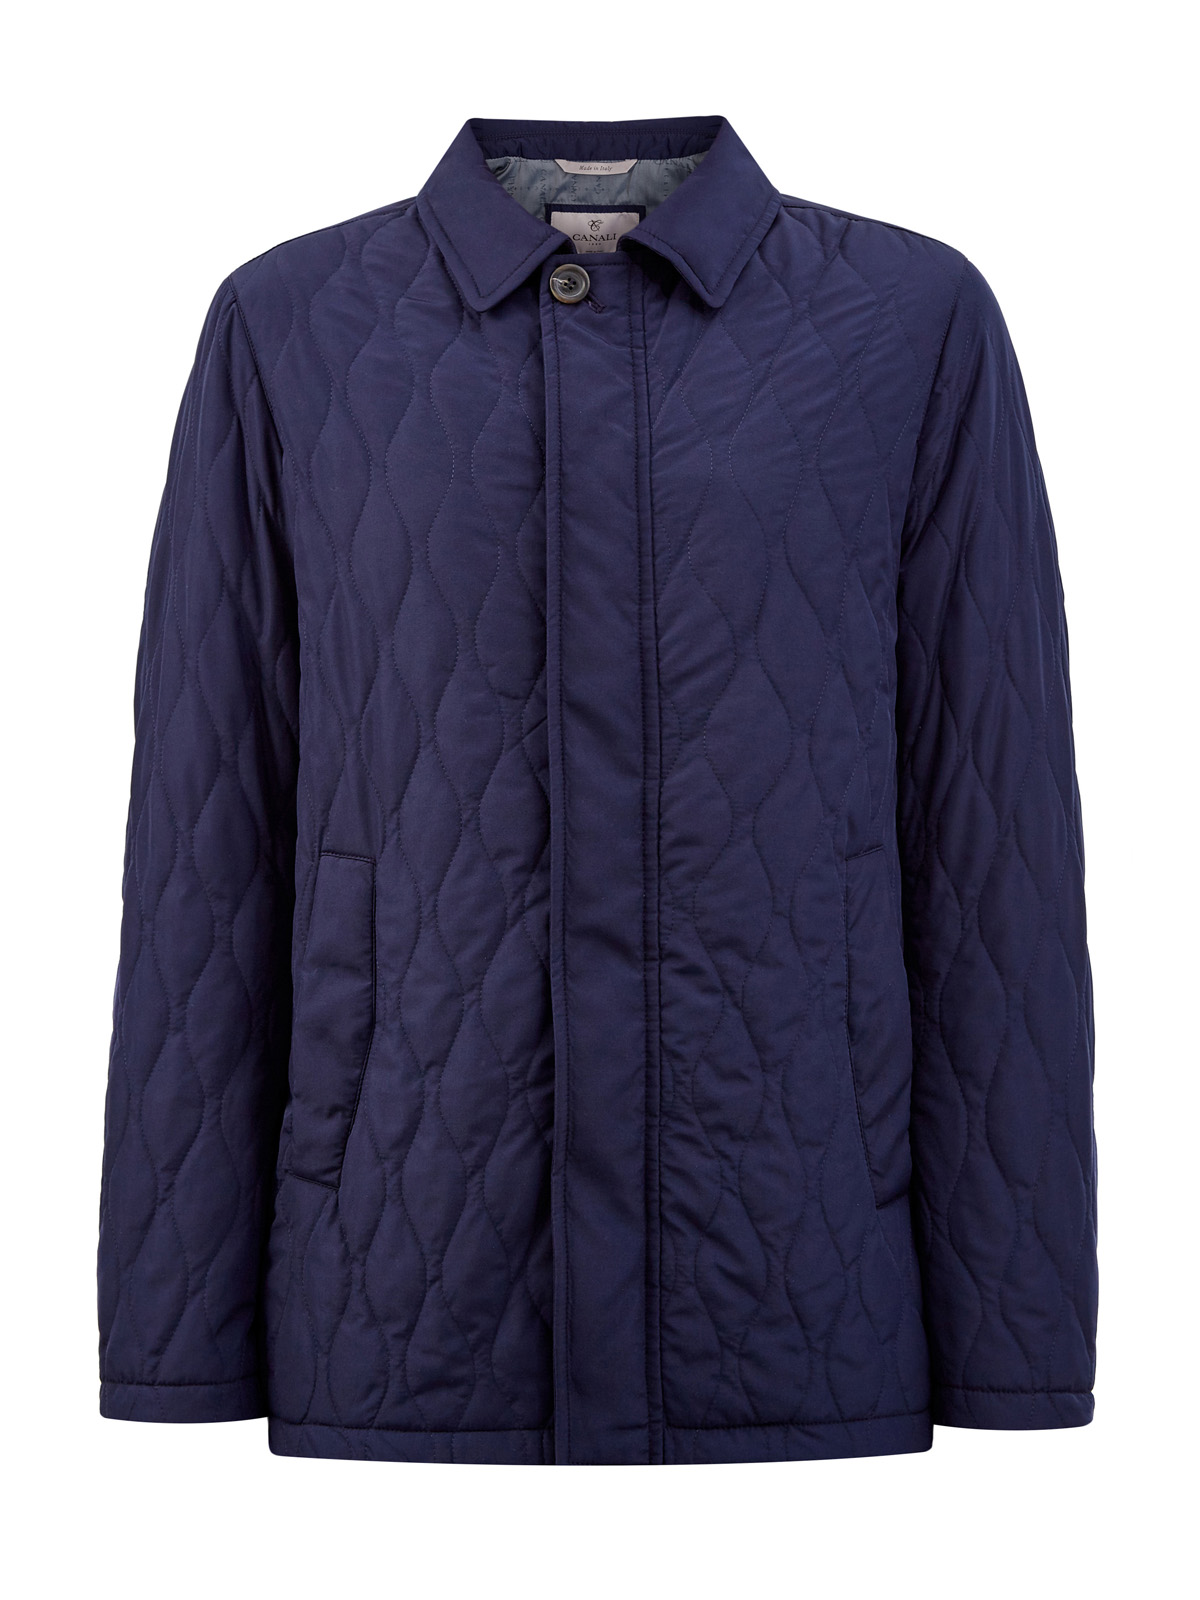 Куртка из стеганого нейлона Rain Protection с отложным воротником CANALI, цвет синий, размер 52;54;56;58;60